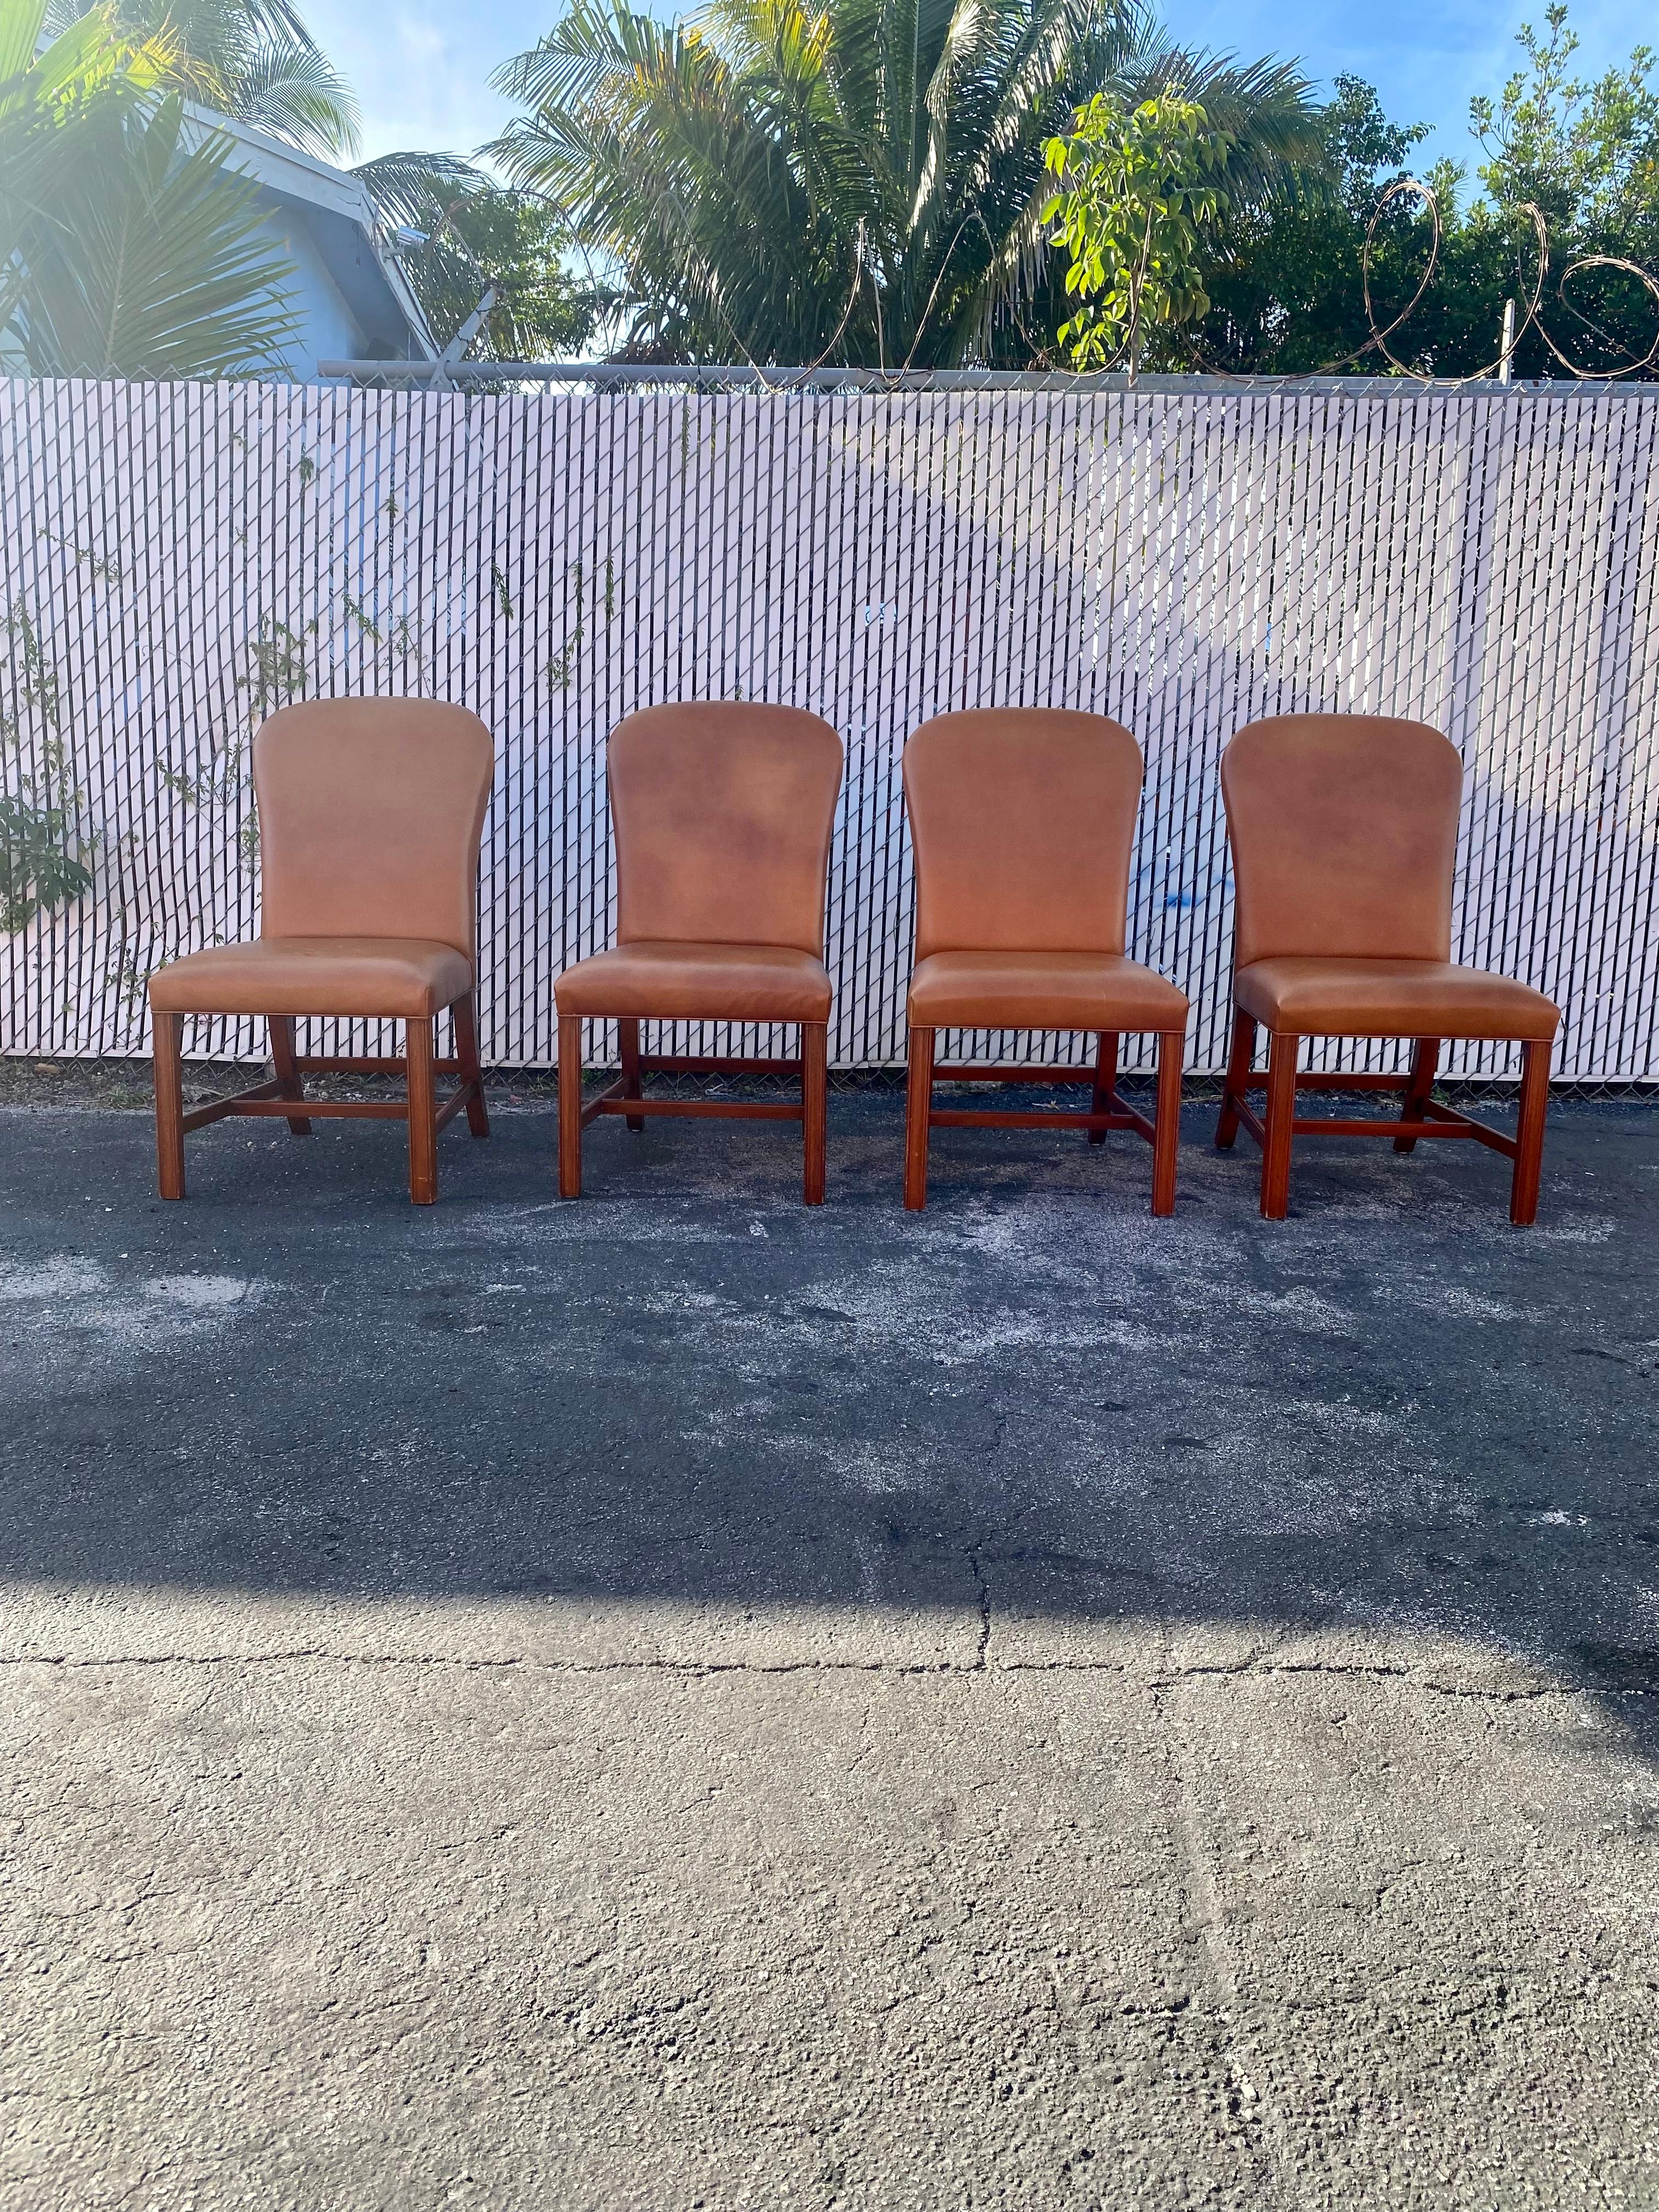 Nous vous proposons ici l'une des plus belles chaises de salle à manger en cuir sellier Ralph Lauren que vous puissiez espérer trouver. Le design est remarquable partout. Les magnifiques chaises sont des pièces d'apparat qui sont également